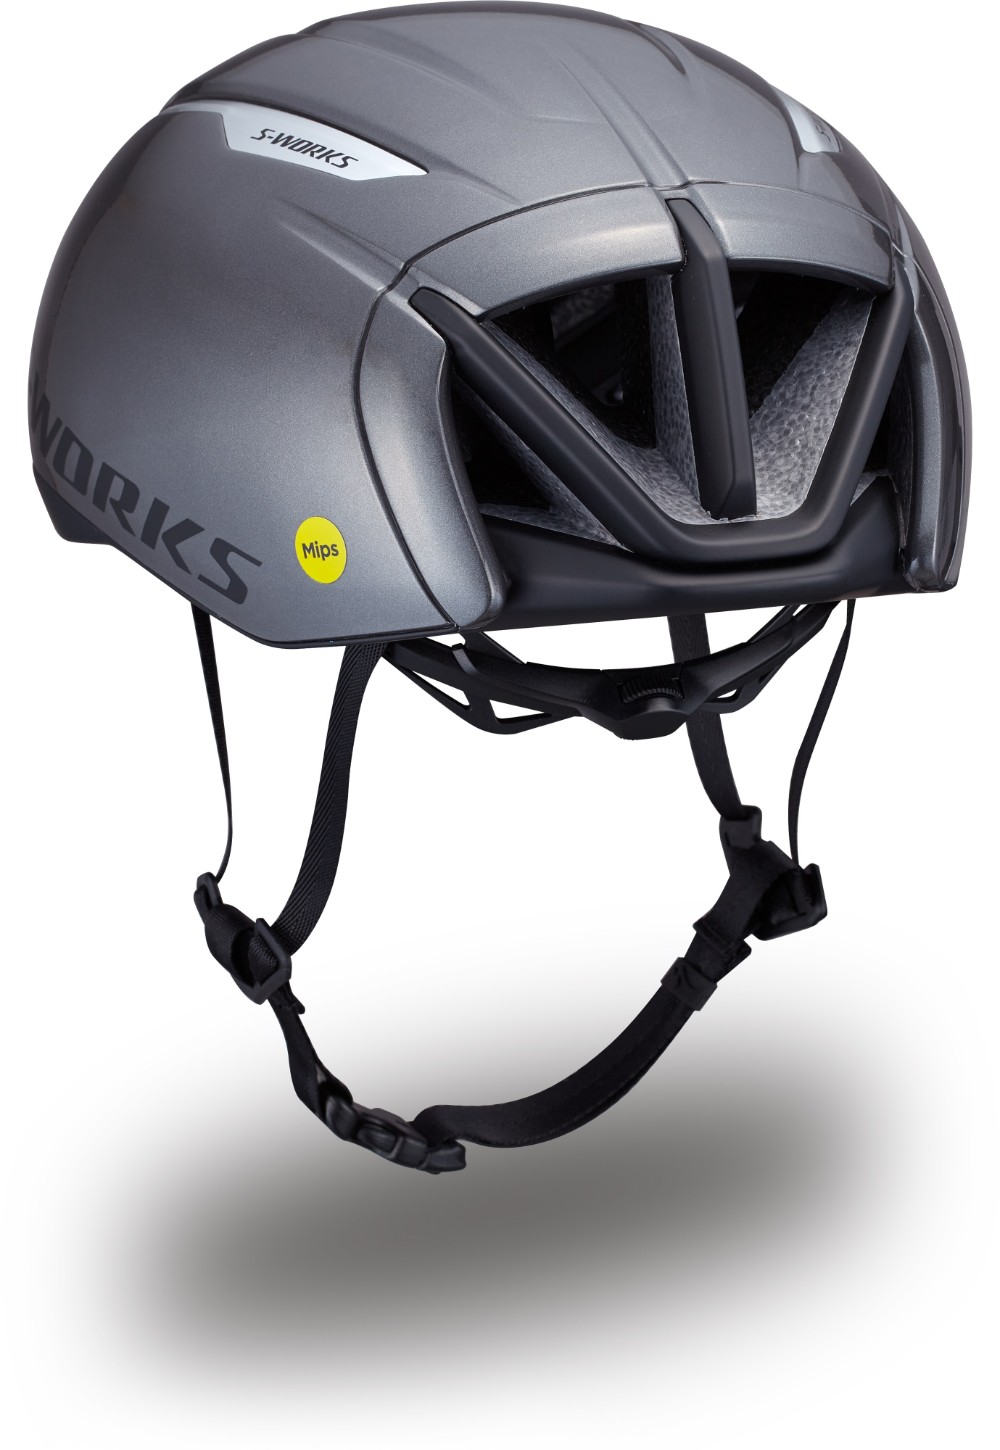 S-Works Evade 3 Mips Road Cycling Helmet image 2